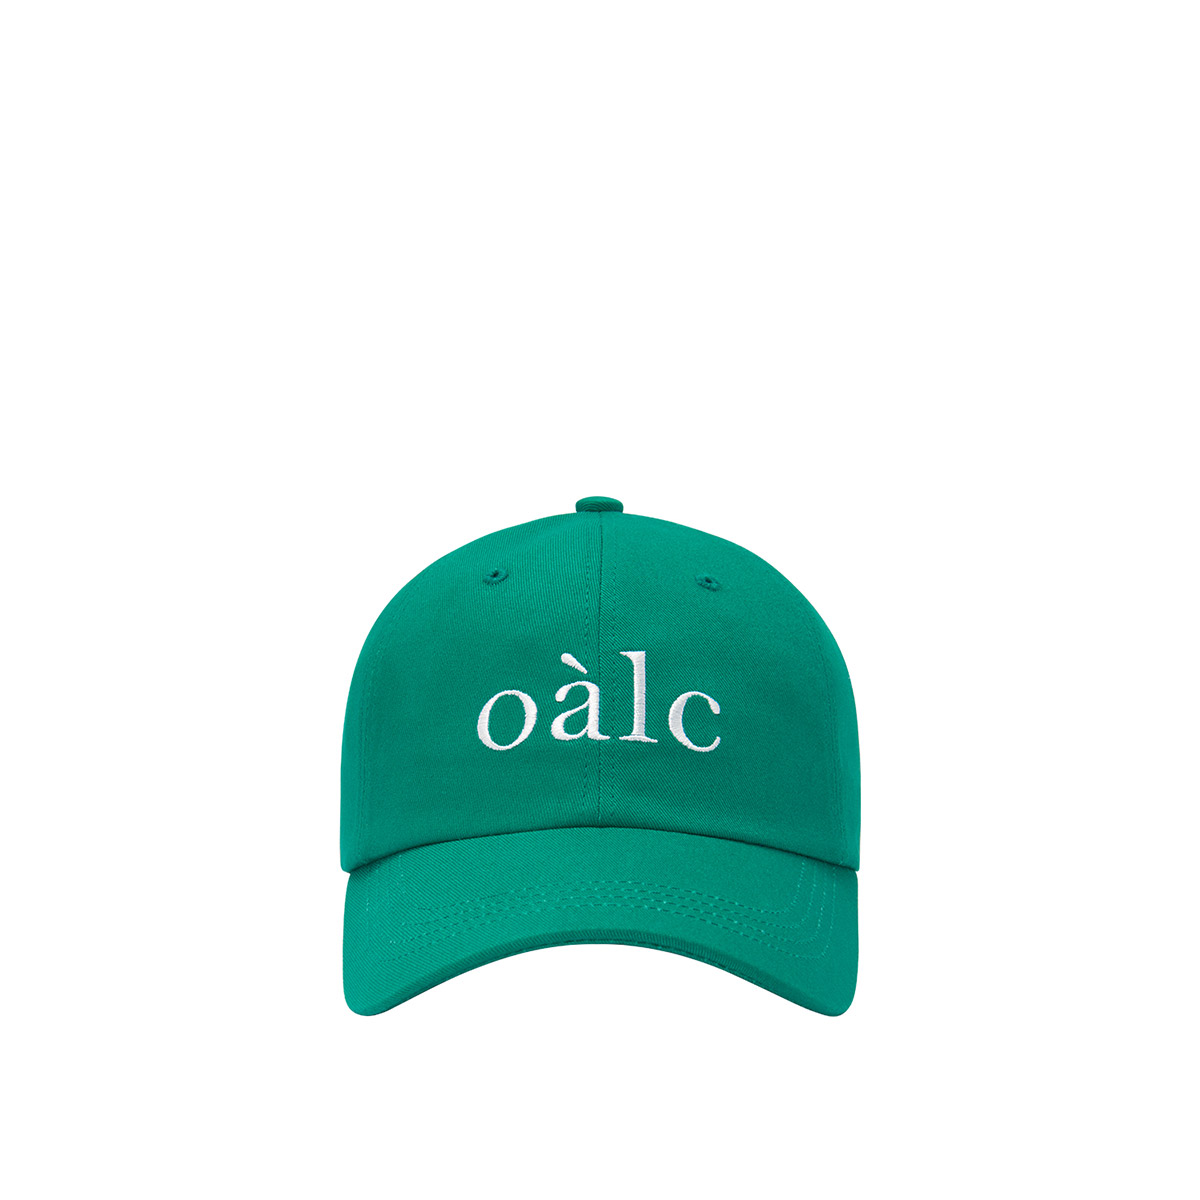 oalc LOGO BALL CAP 로고 볼캡 (GREEN)